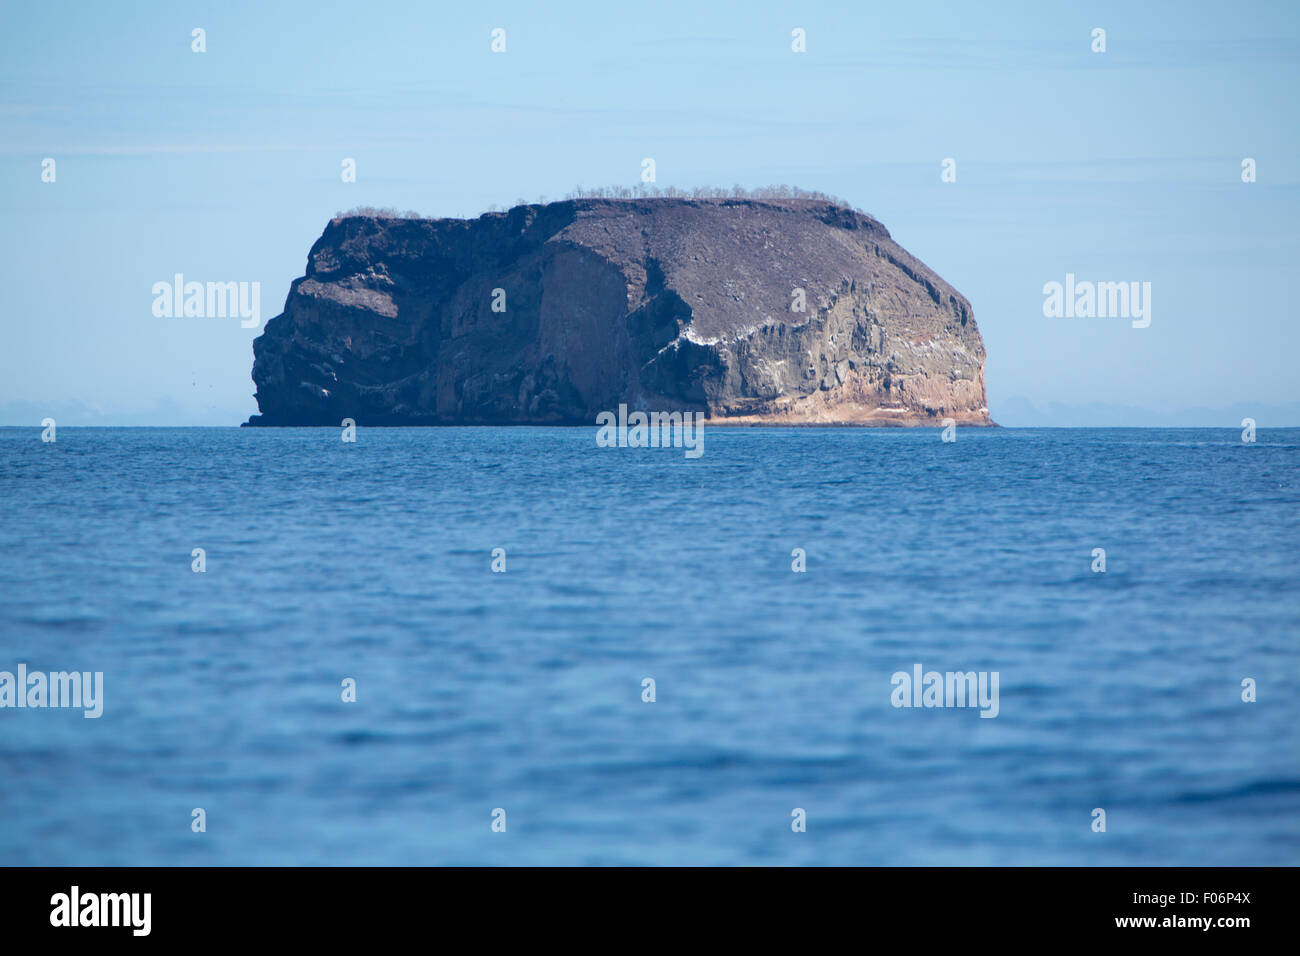 Formazione di roccia nel mezzo dell'Oceano Pacifico nelle isole Galapagos contro un cielo blu chiaro. Ecuador 2015. Foto Stock